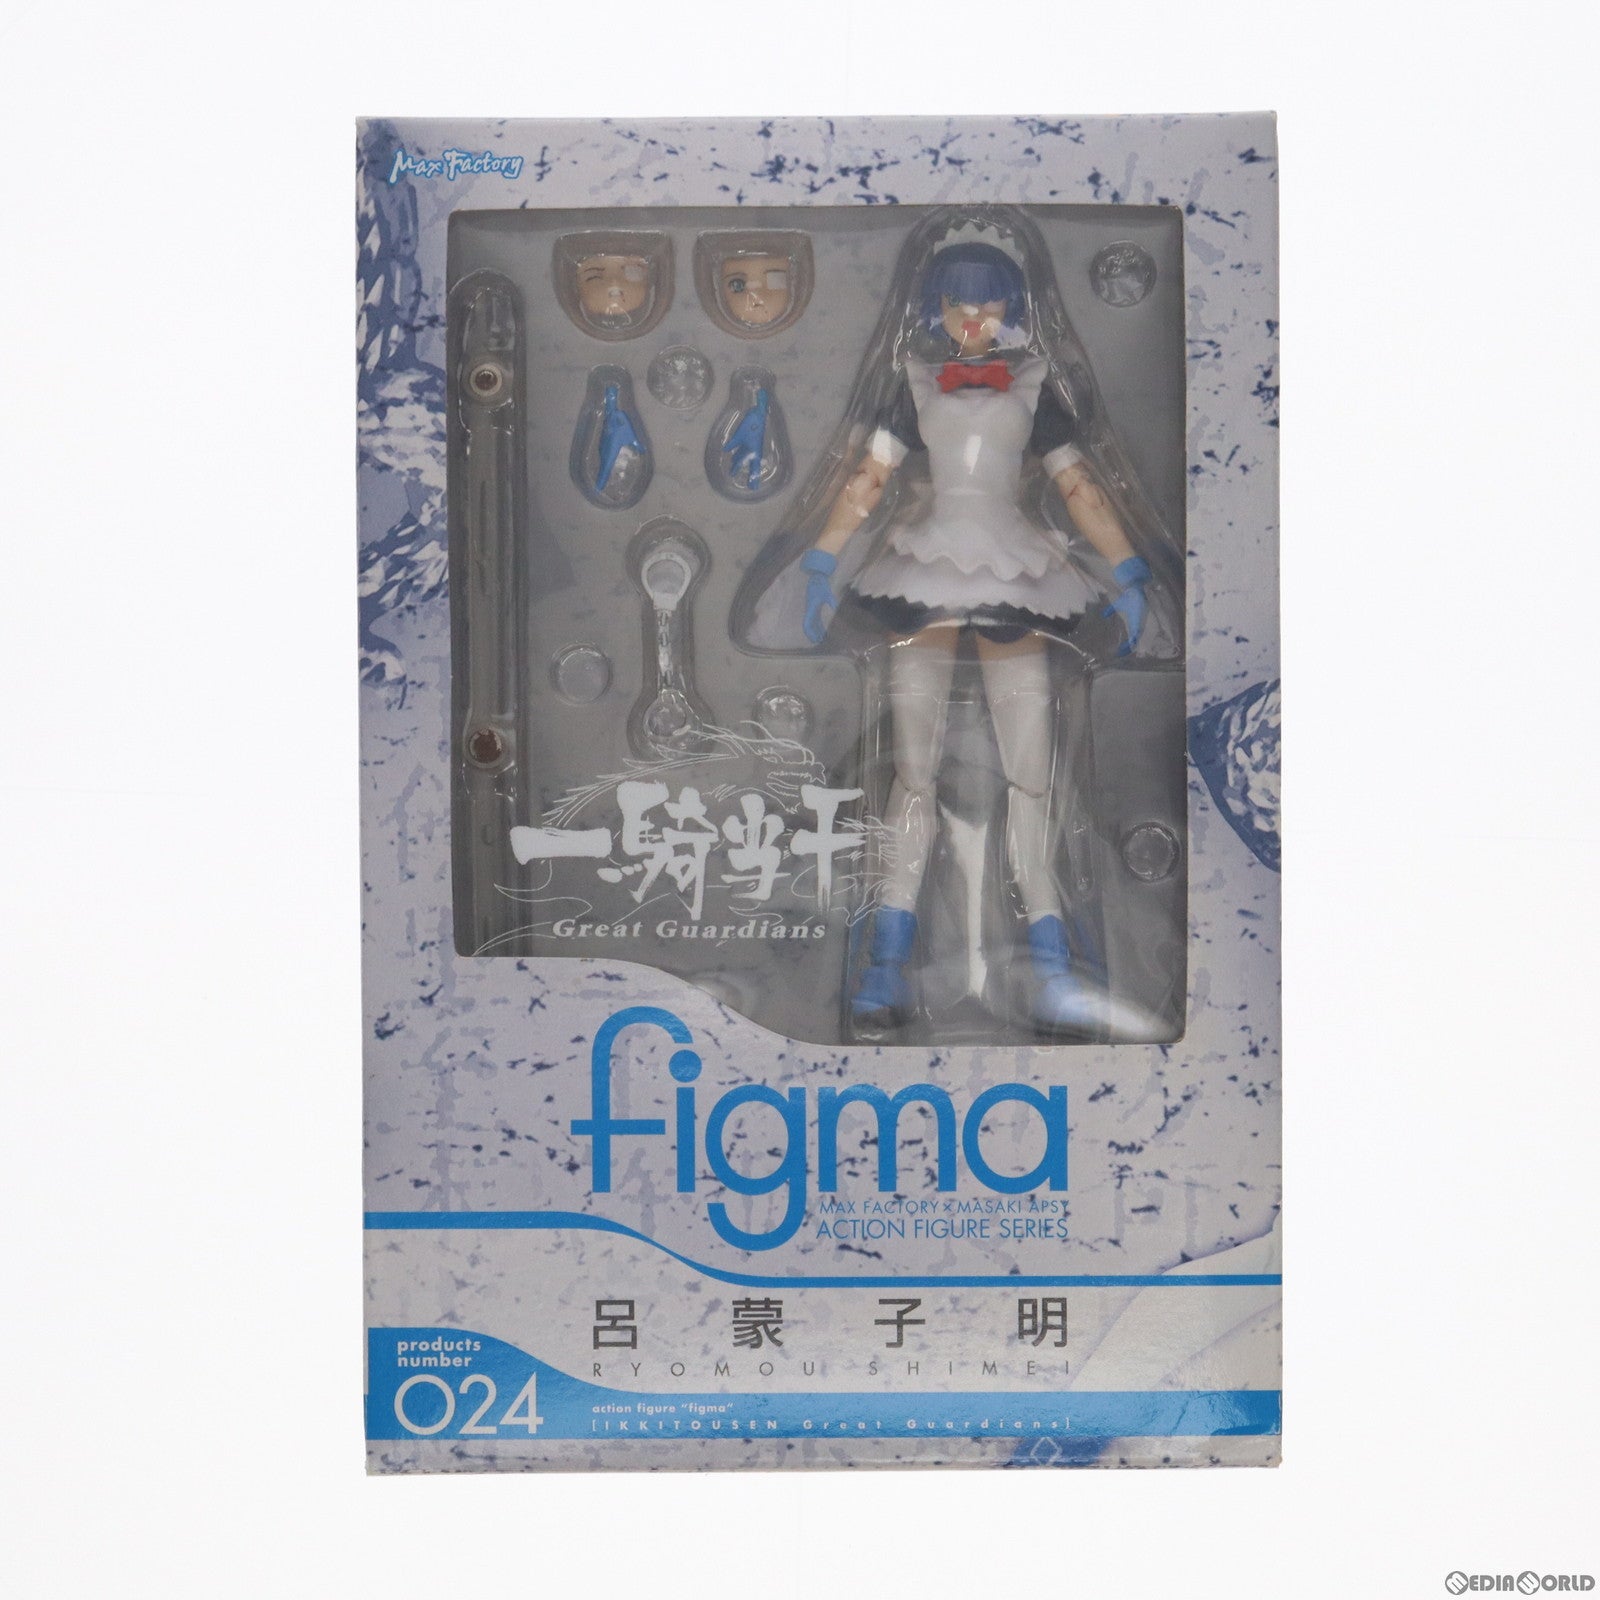 【中古即納】[FIG]figma(フィグマ) 024 呂蒙子明(りょもうしめい) 一騎当千 Great Guardians(グレートガーディアンズ) 完成品 可動フィギュア マックスファクトリー(20081210)